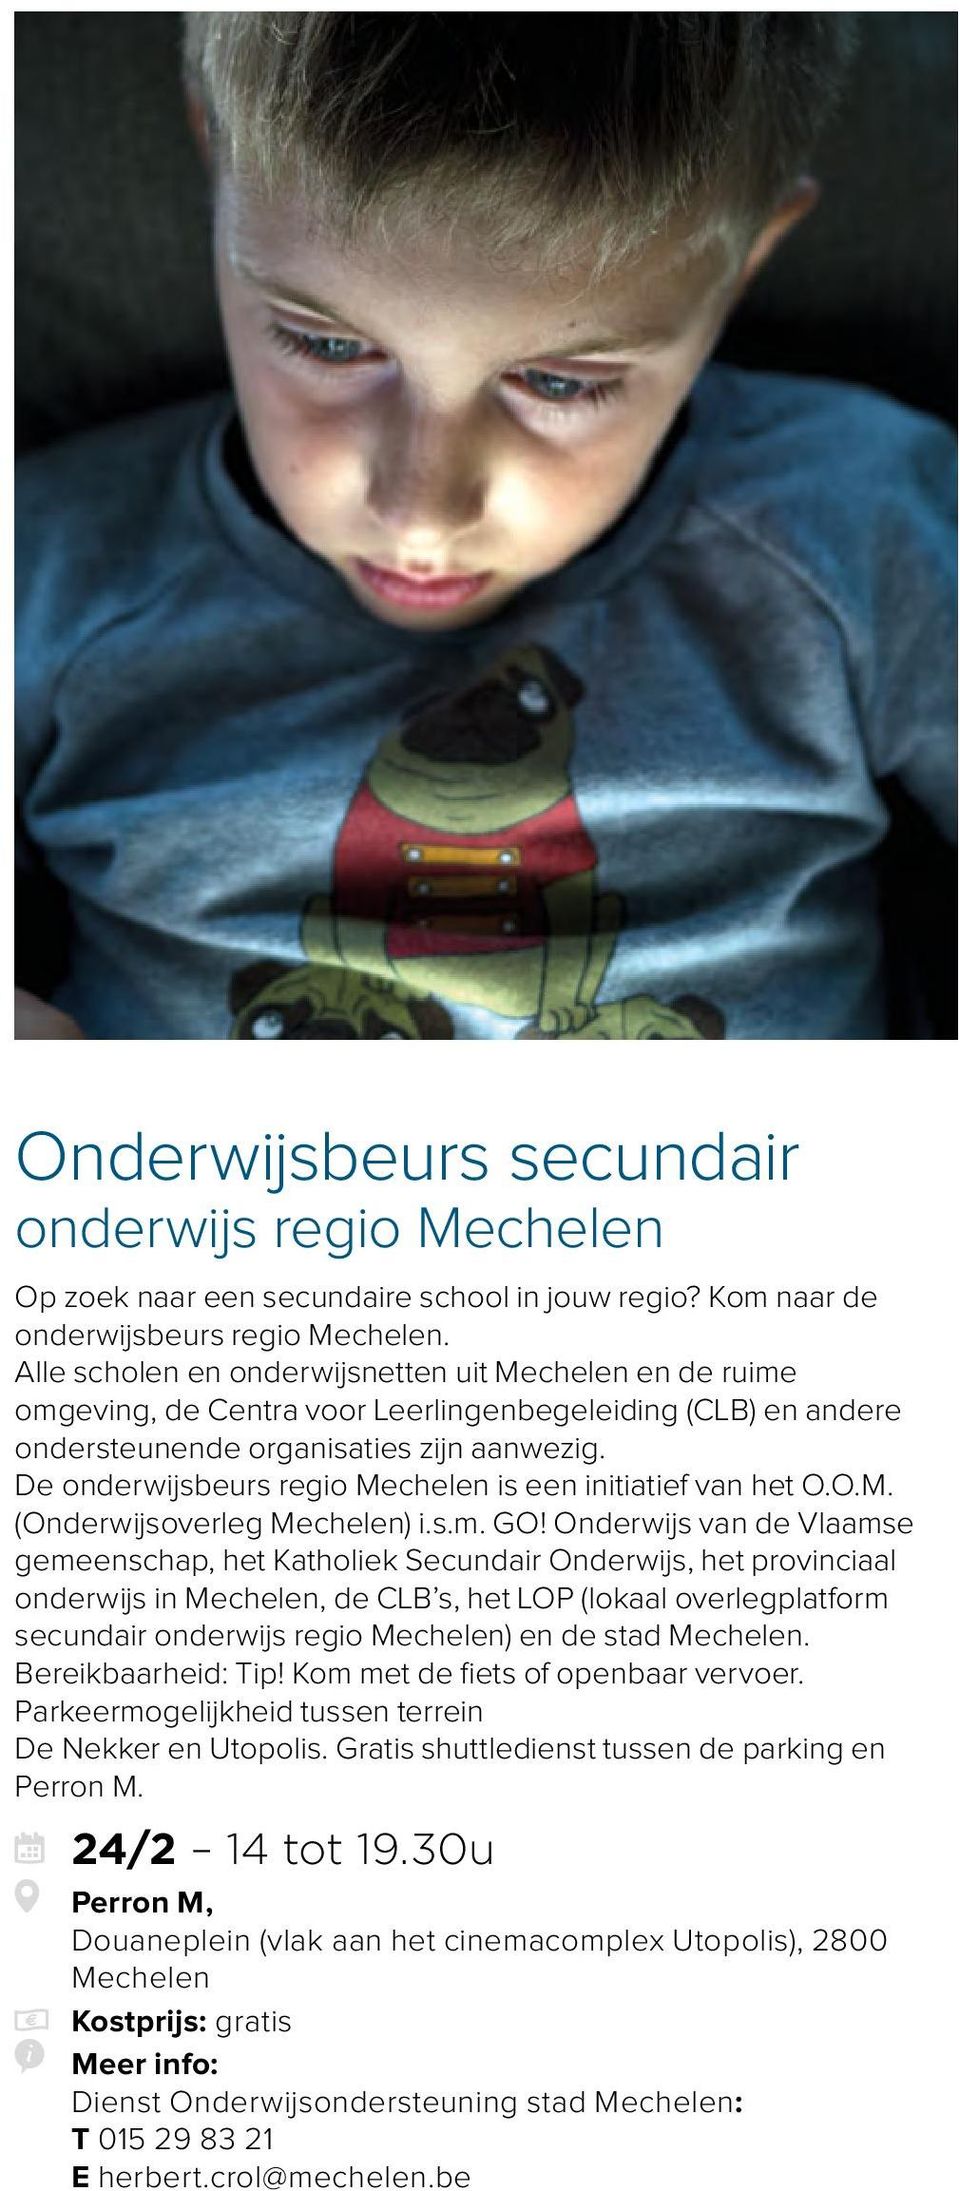 De onderwijsbeurs regio Mechelen is een initiatief van het O.O.M. (Onderwijsoverleg Mechelen) i.s.m. GO!